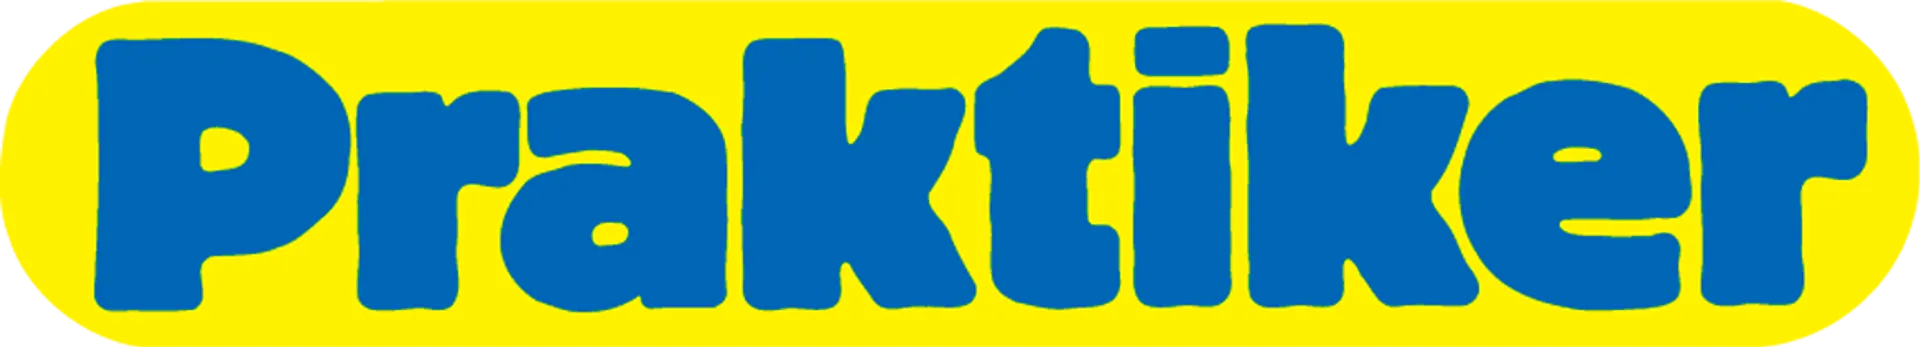 PRAKTIKER logo